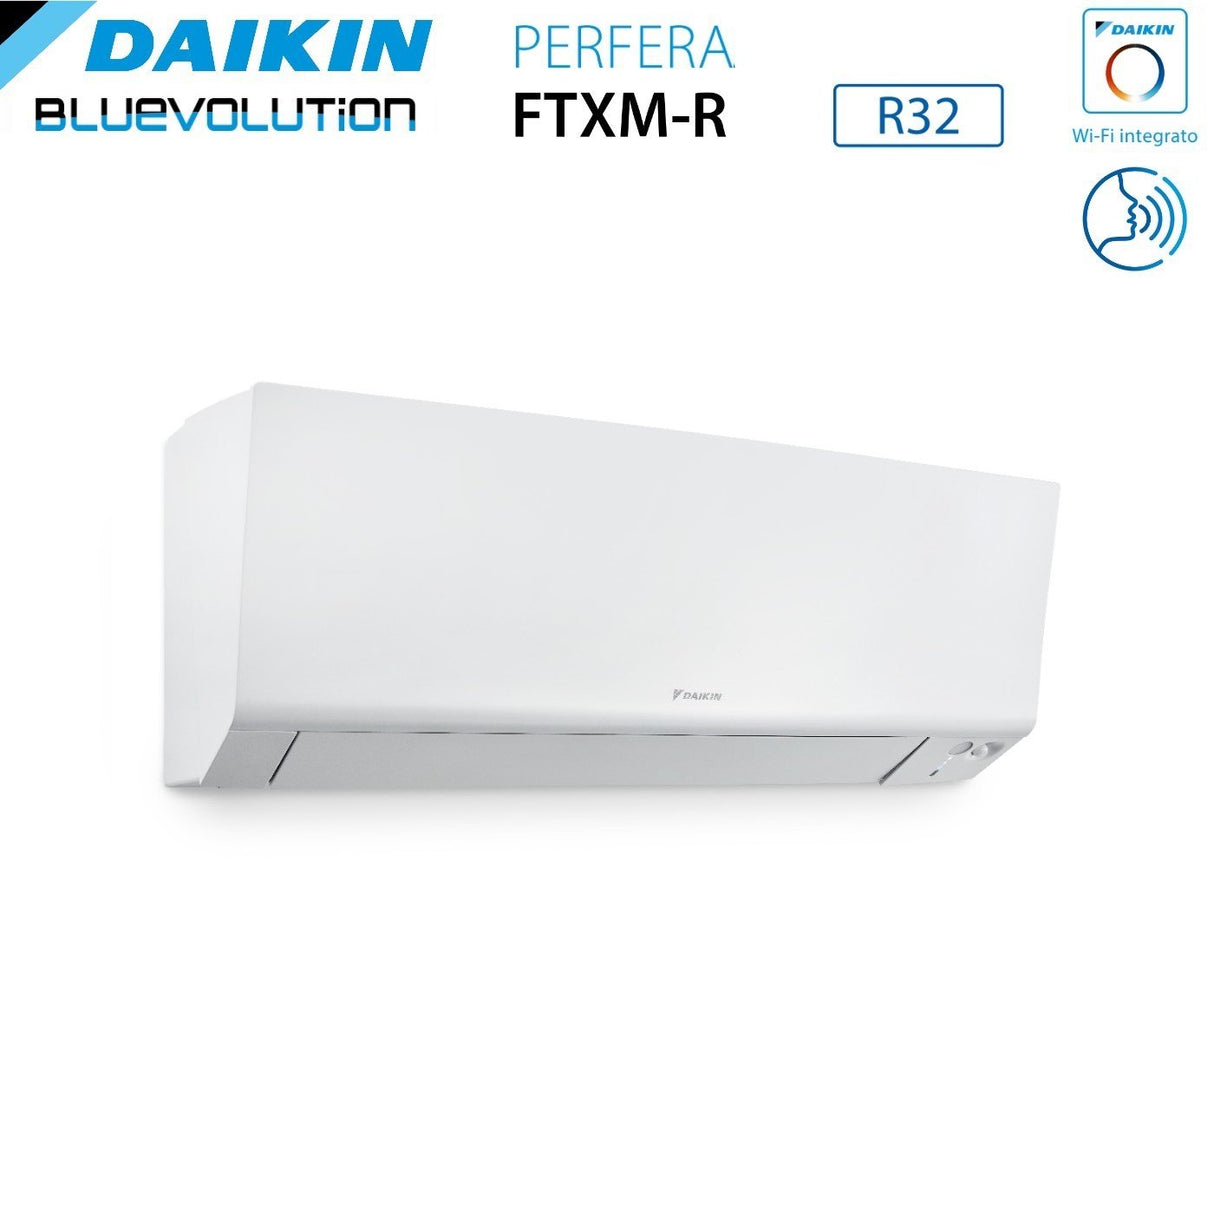 immagine-4-daikin-climatizzatore-condizionatore-daikin-bluevolution-quadri-split-inverter-serie-ftxmr-perfera-wall-991212-con-4mxm80a-r-32-wi-fi-integrato-900090001200012000-garanzia-italiana